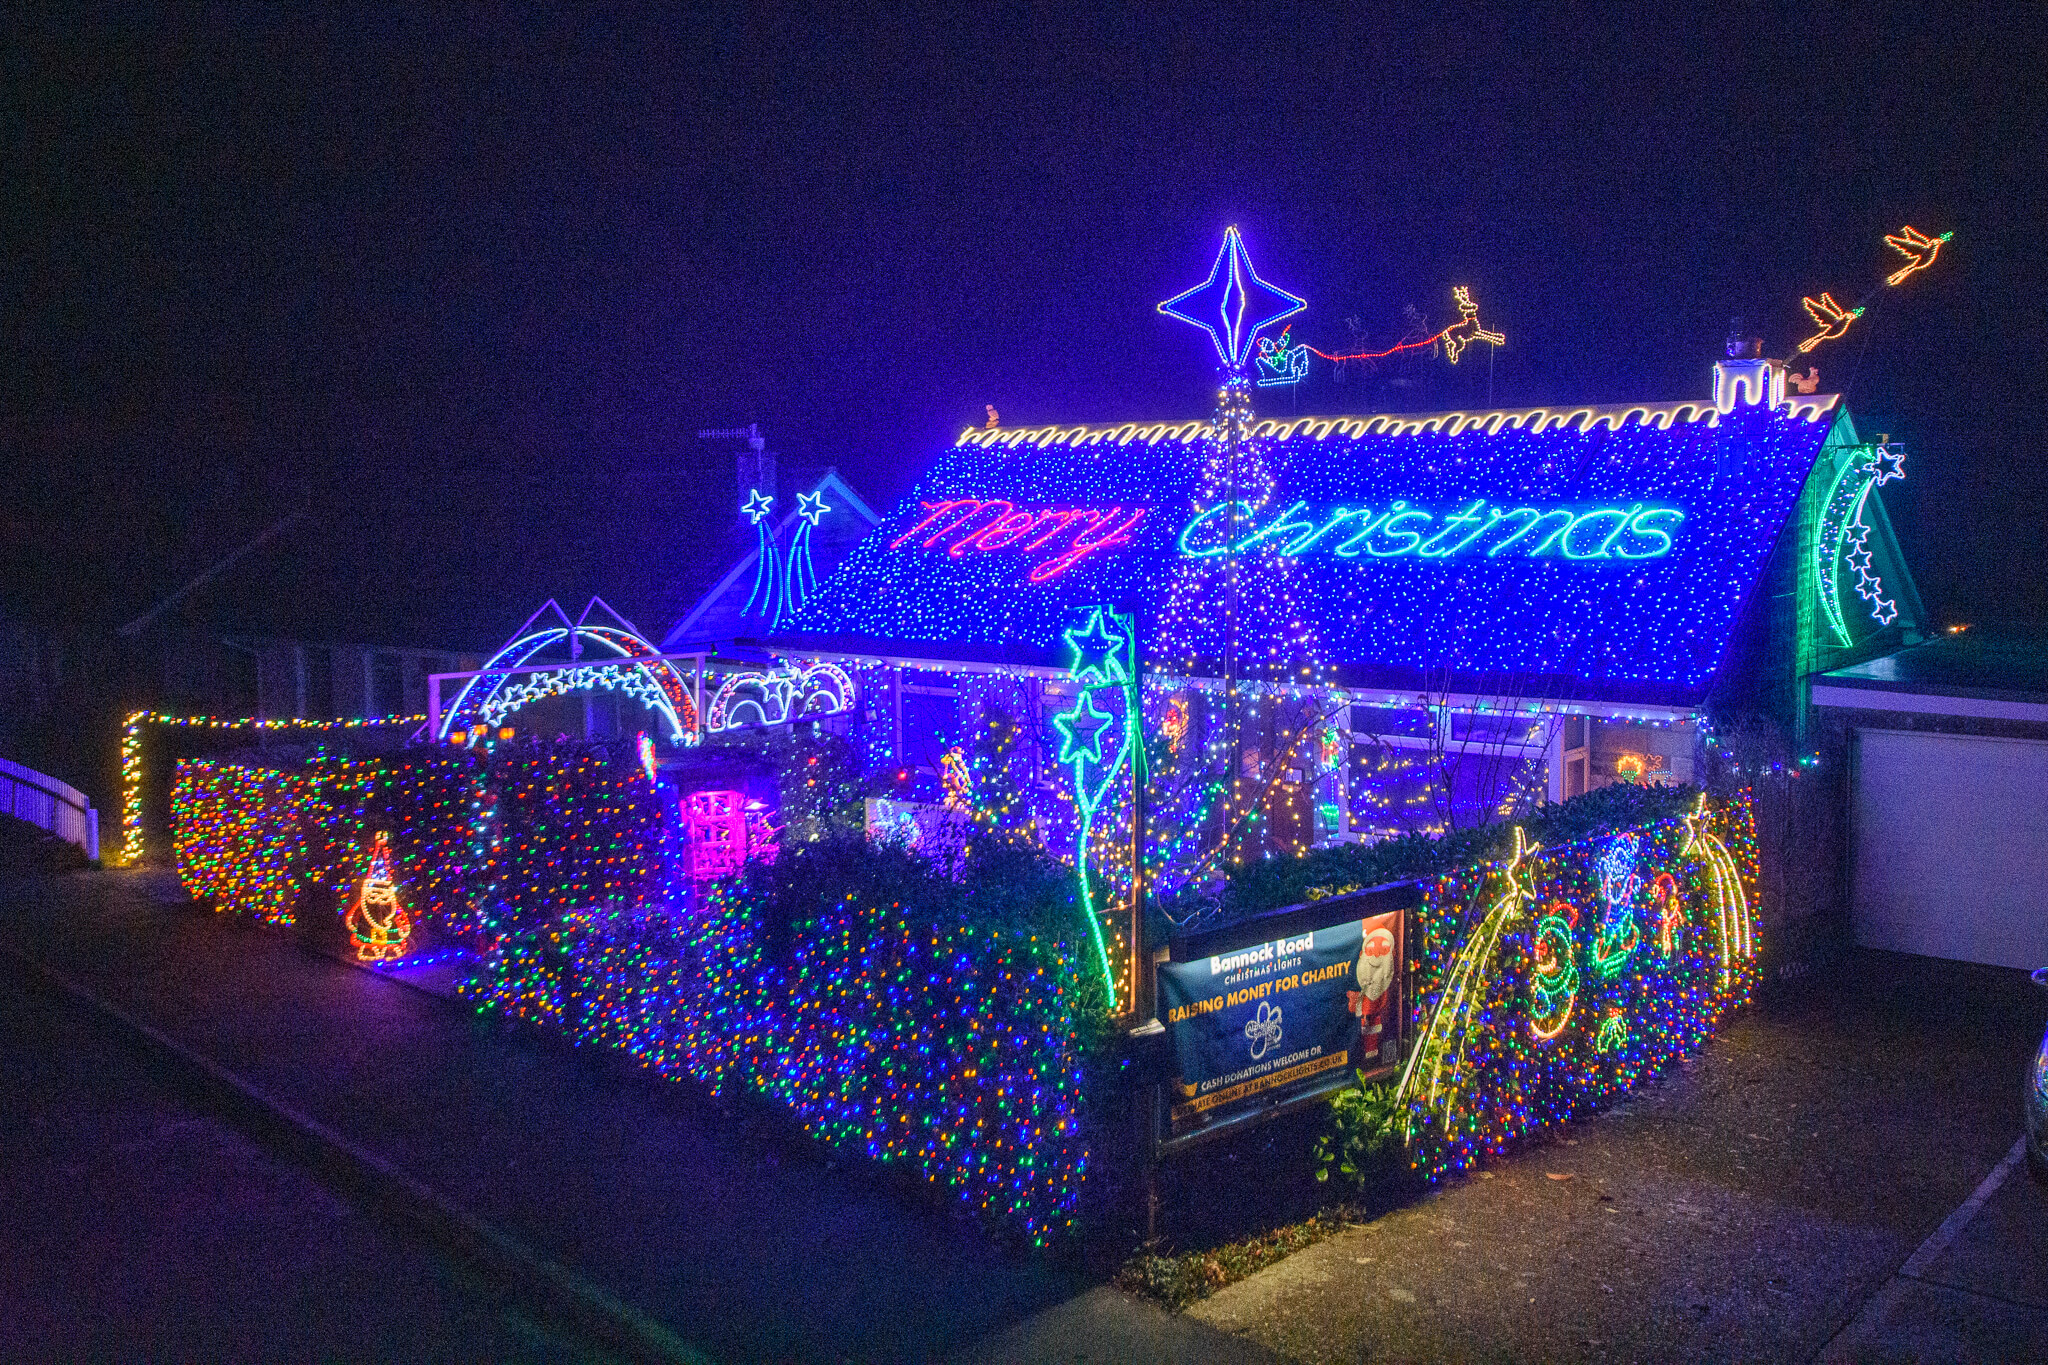 2021 Display Bannock Road Christmas Lights